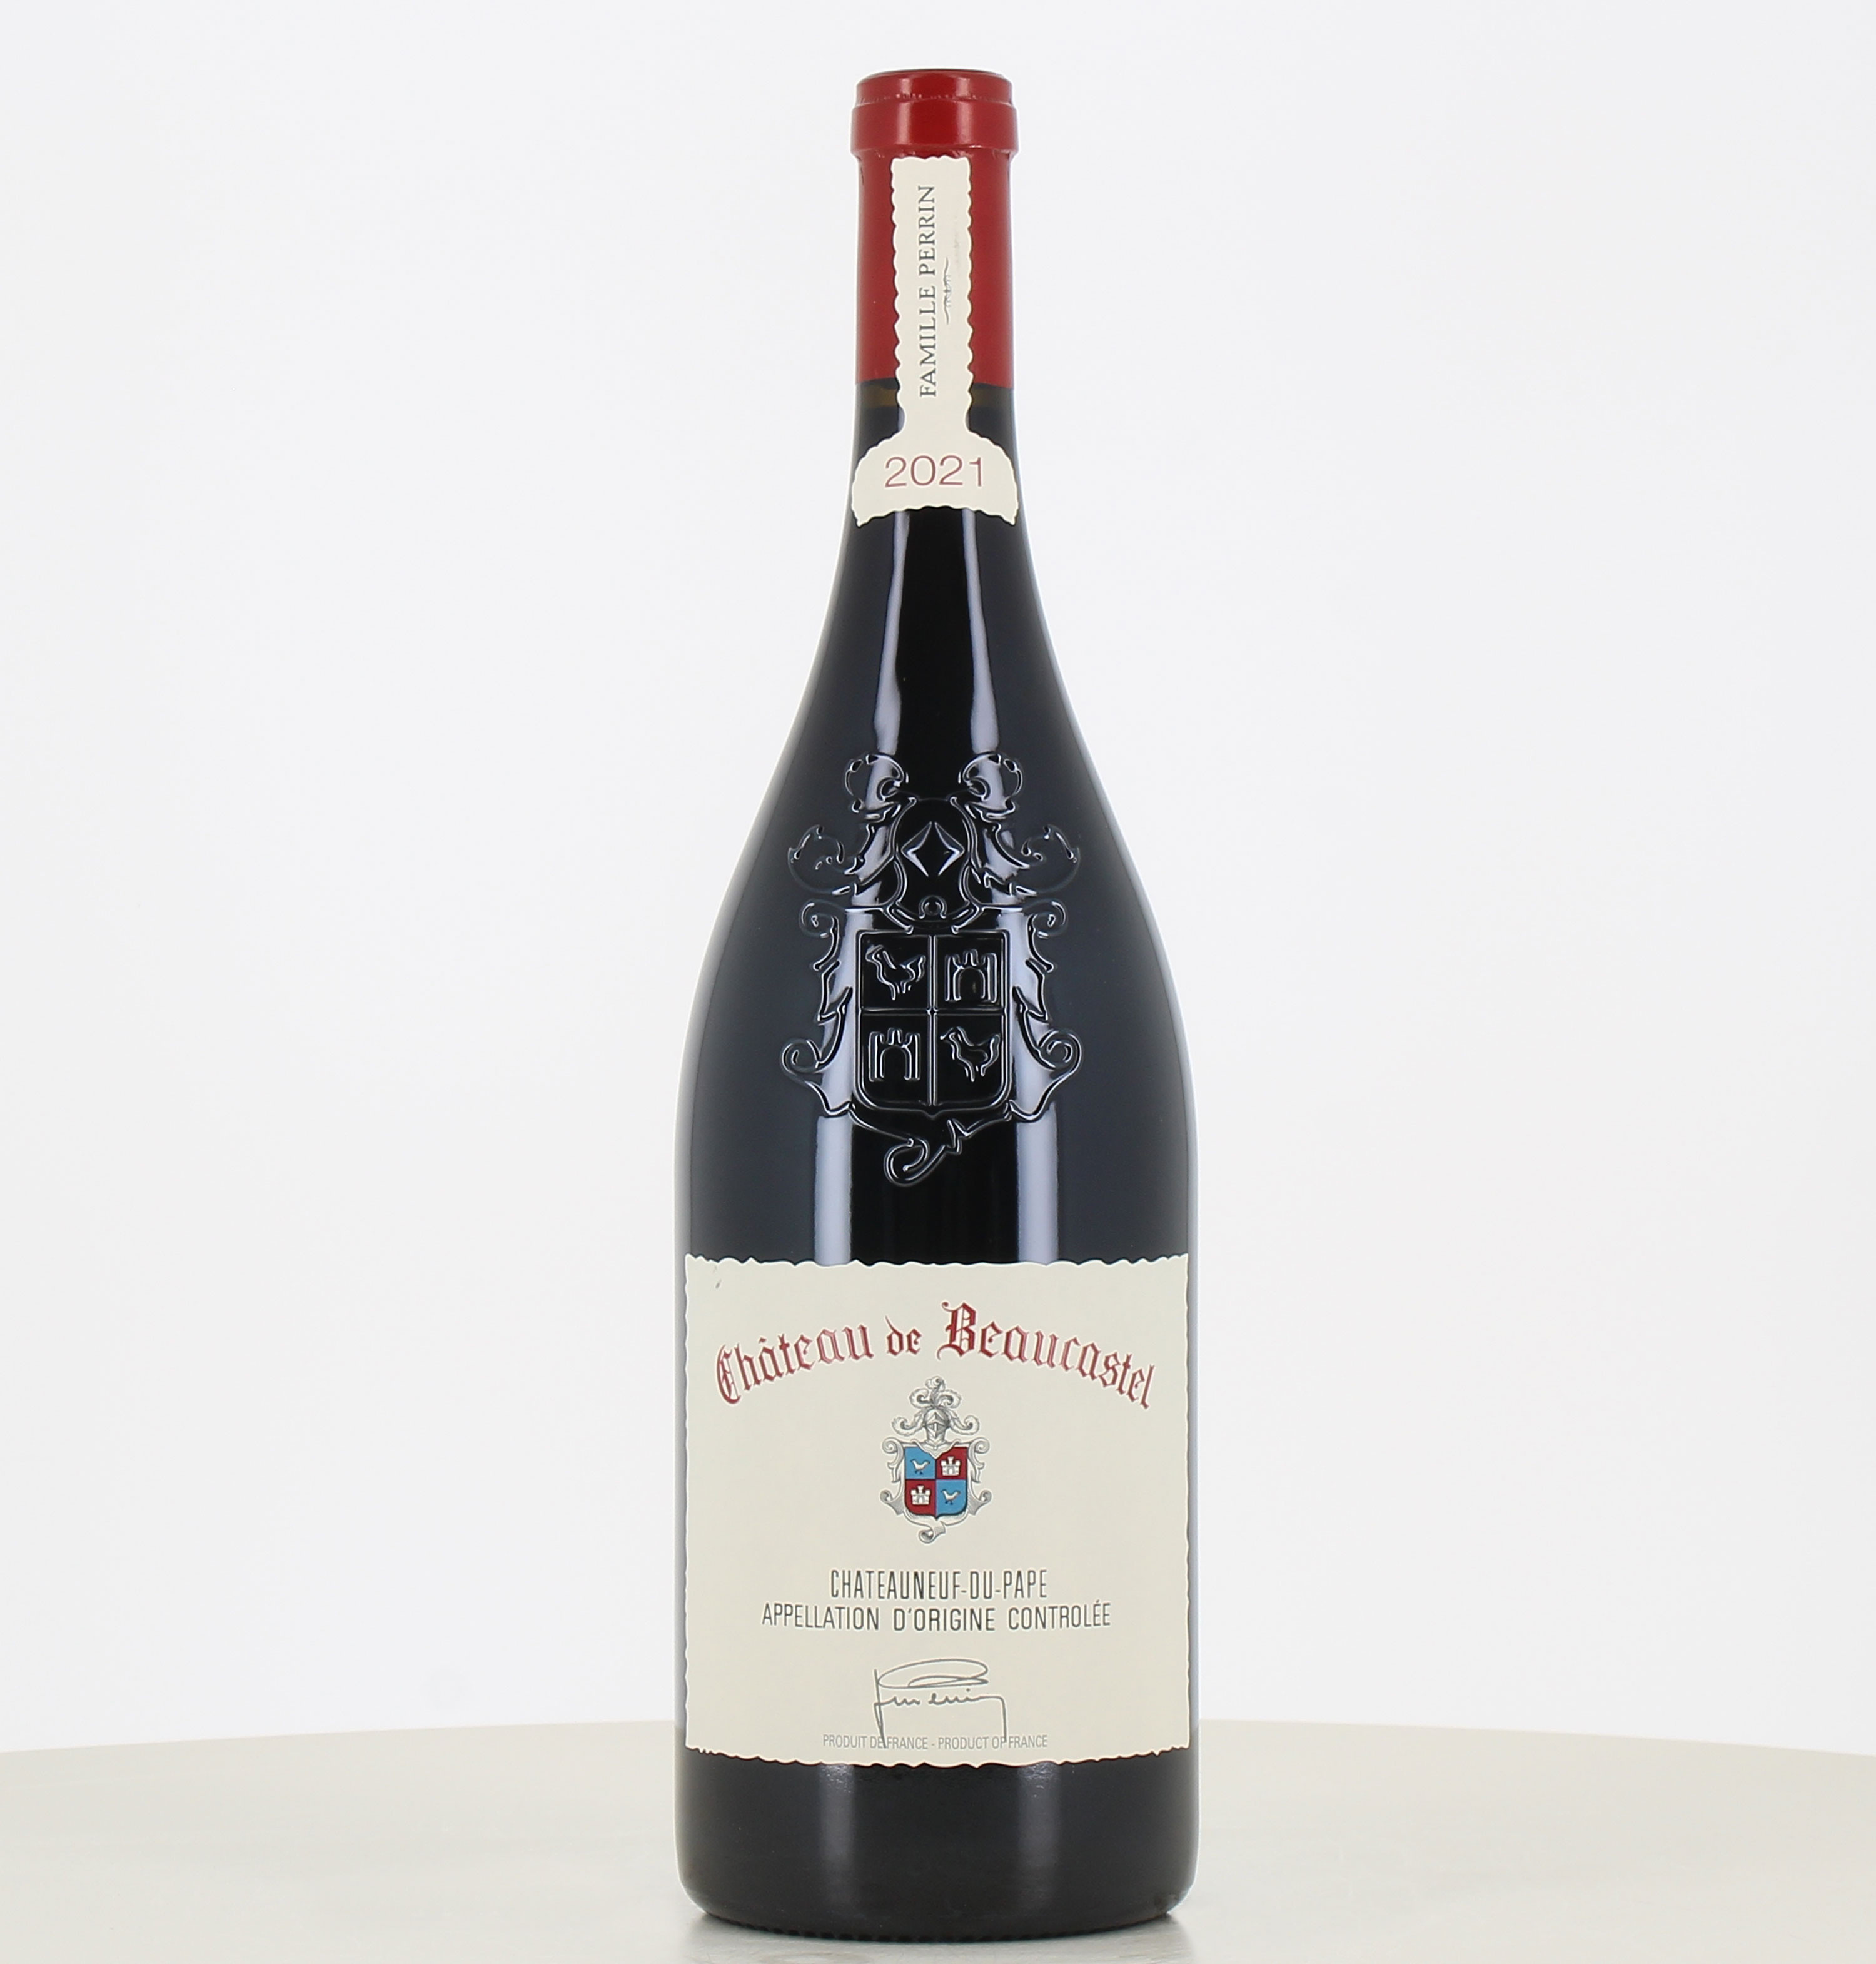 Magnum vino tinto Chateauneuf du Pape Château de Beaucastel 2021 